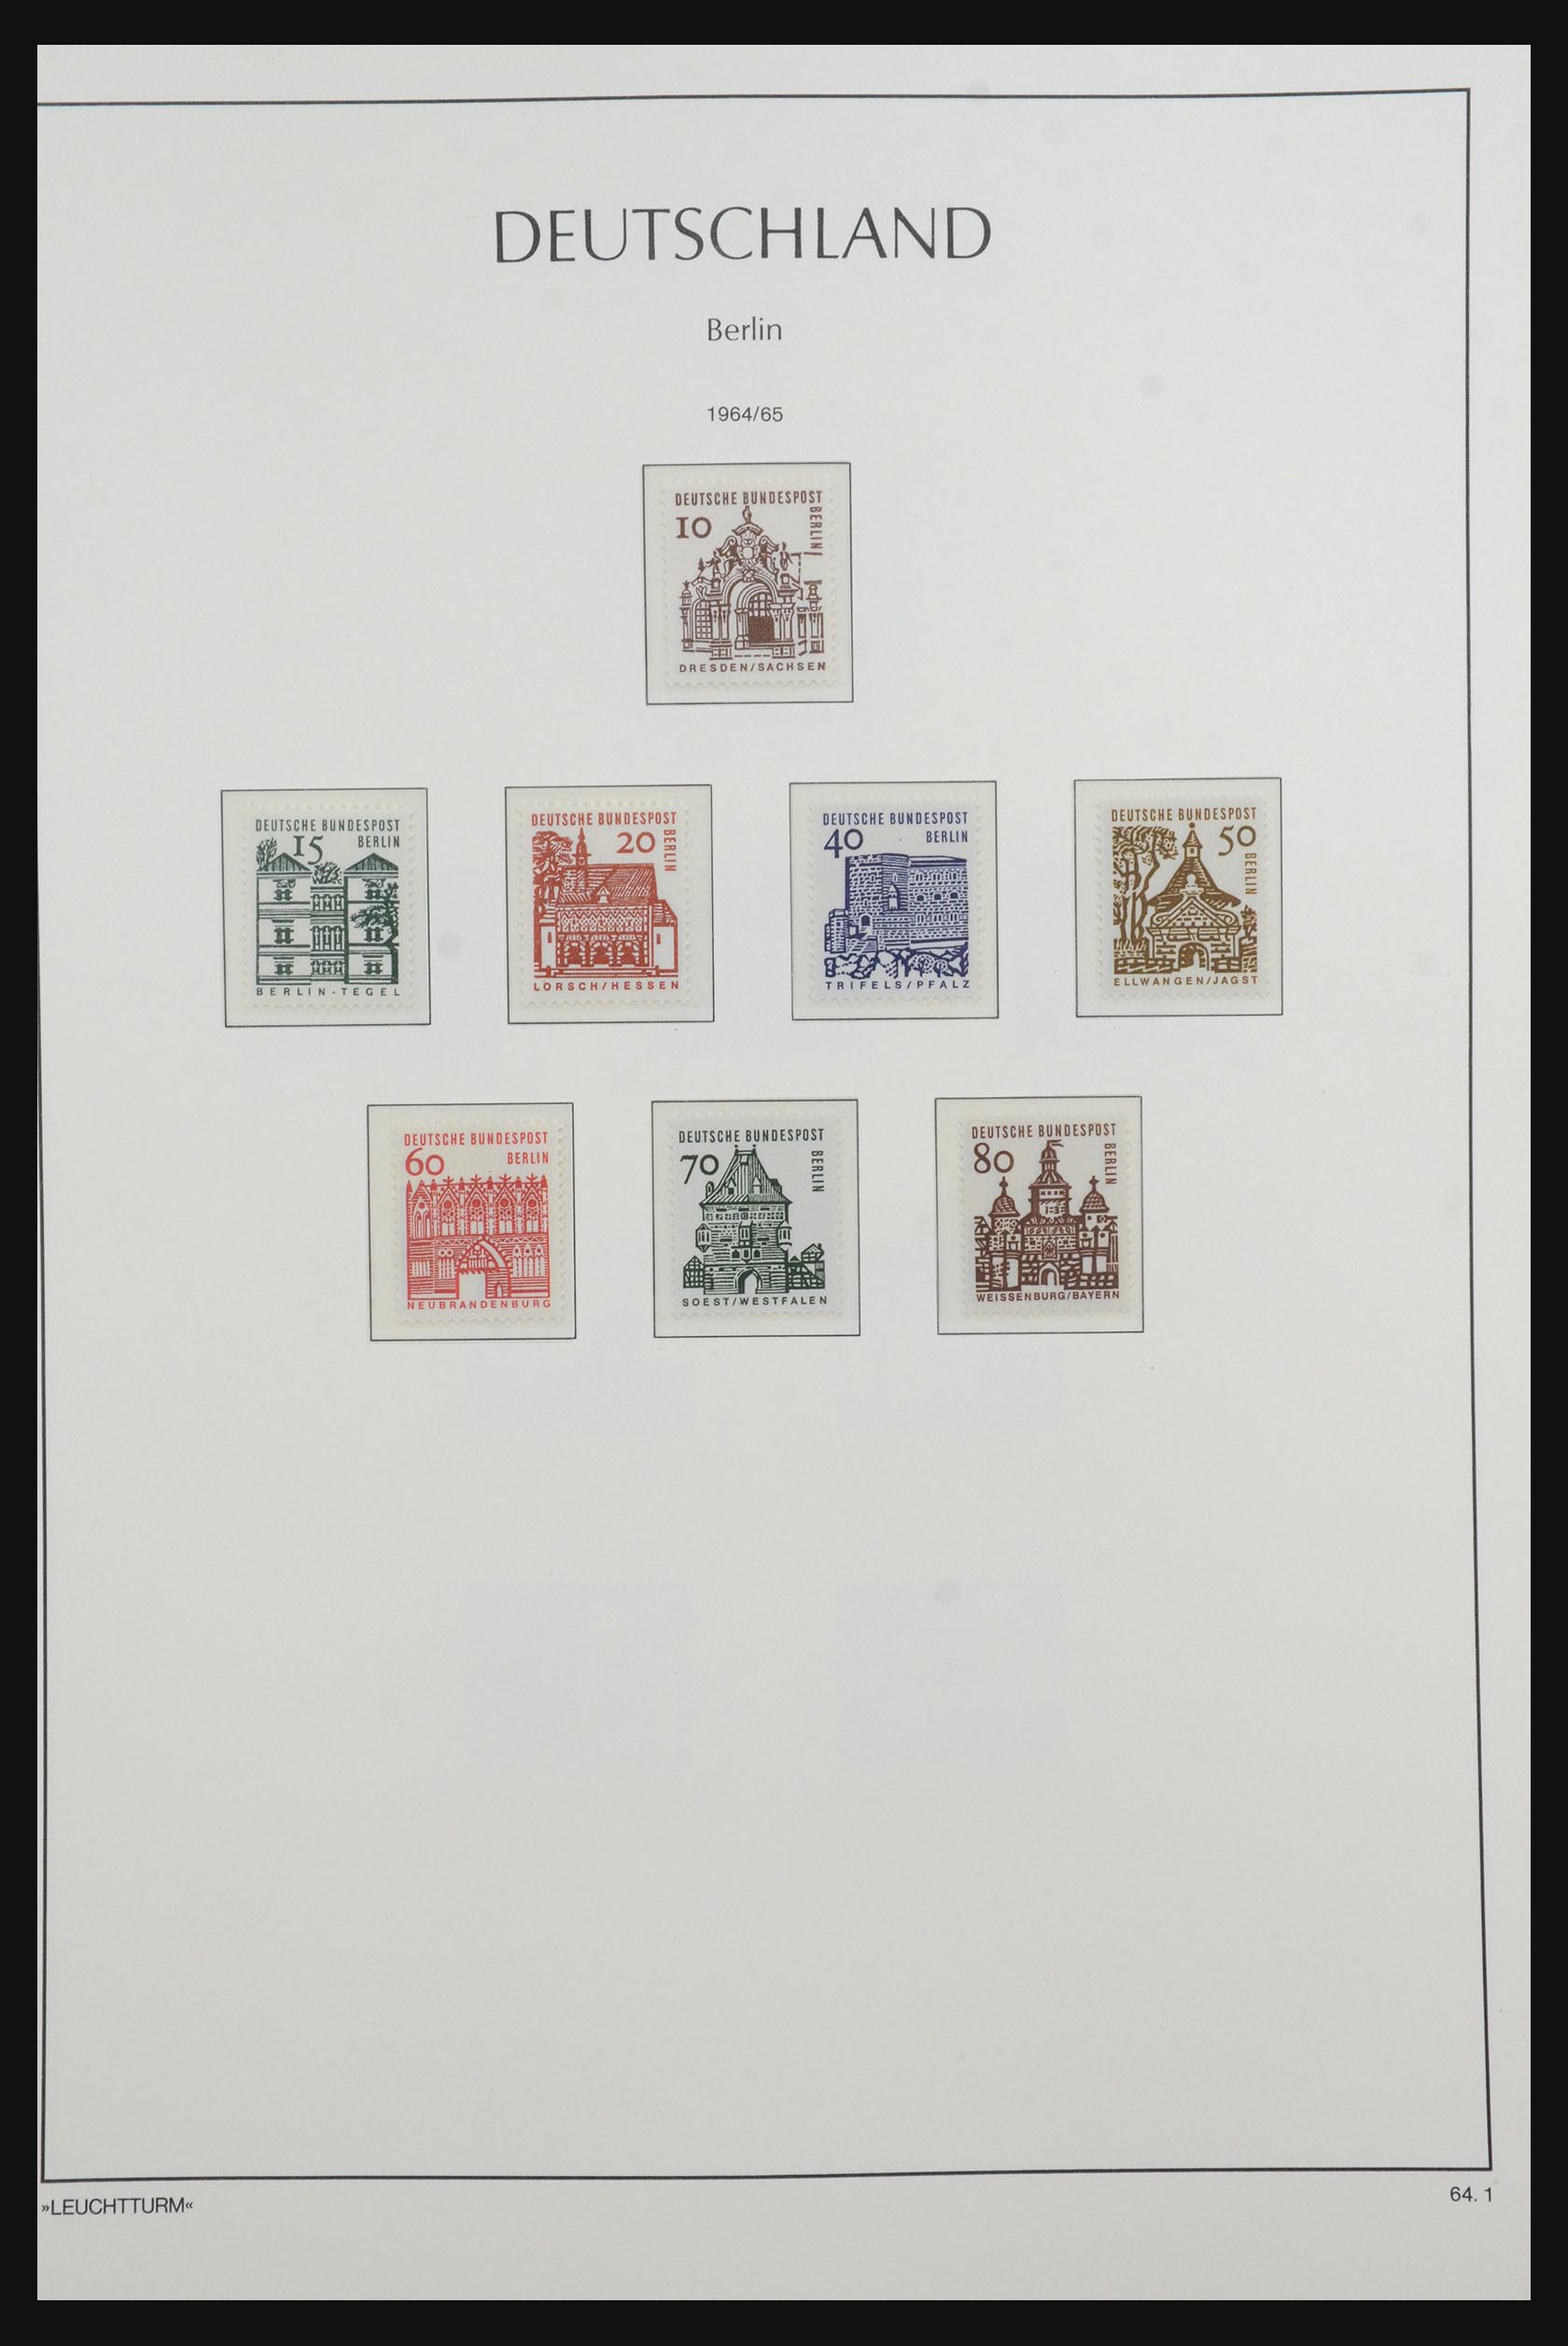 31601 020 - 31601 Bundespost, Berlijn en Saar 1948-2008.